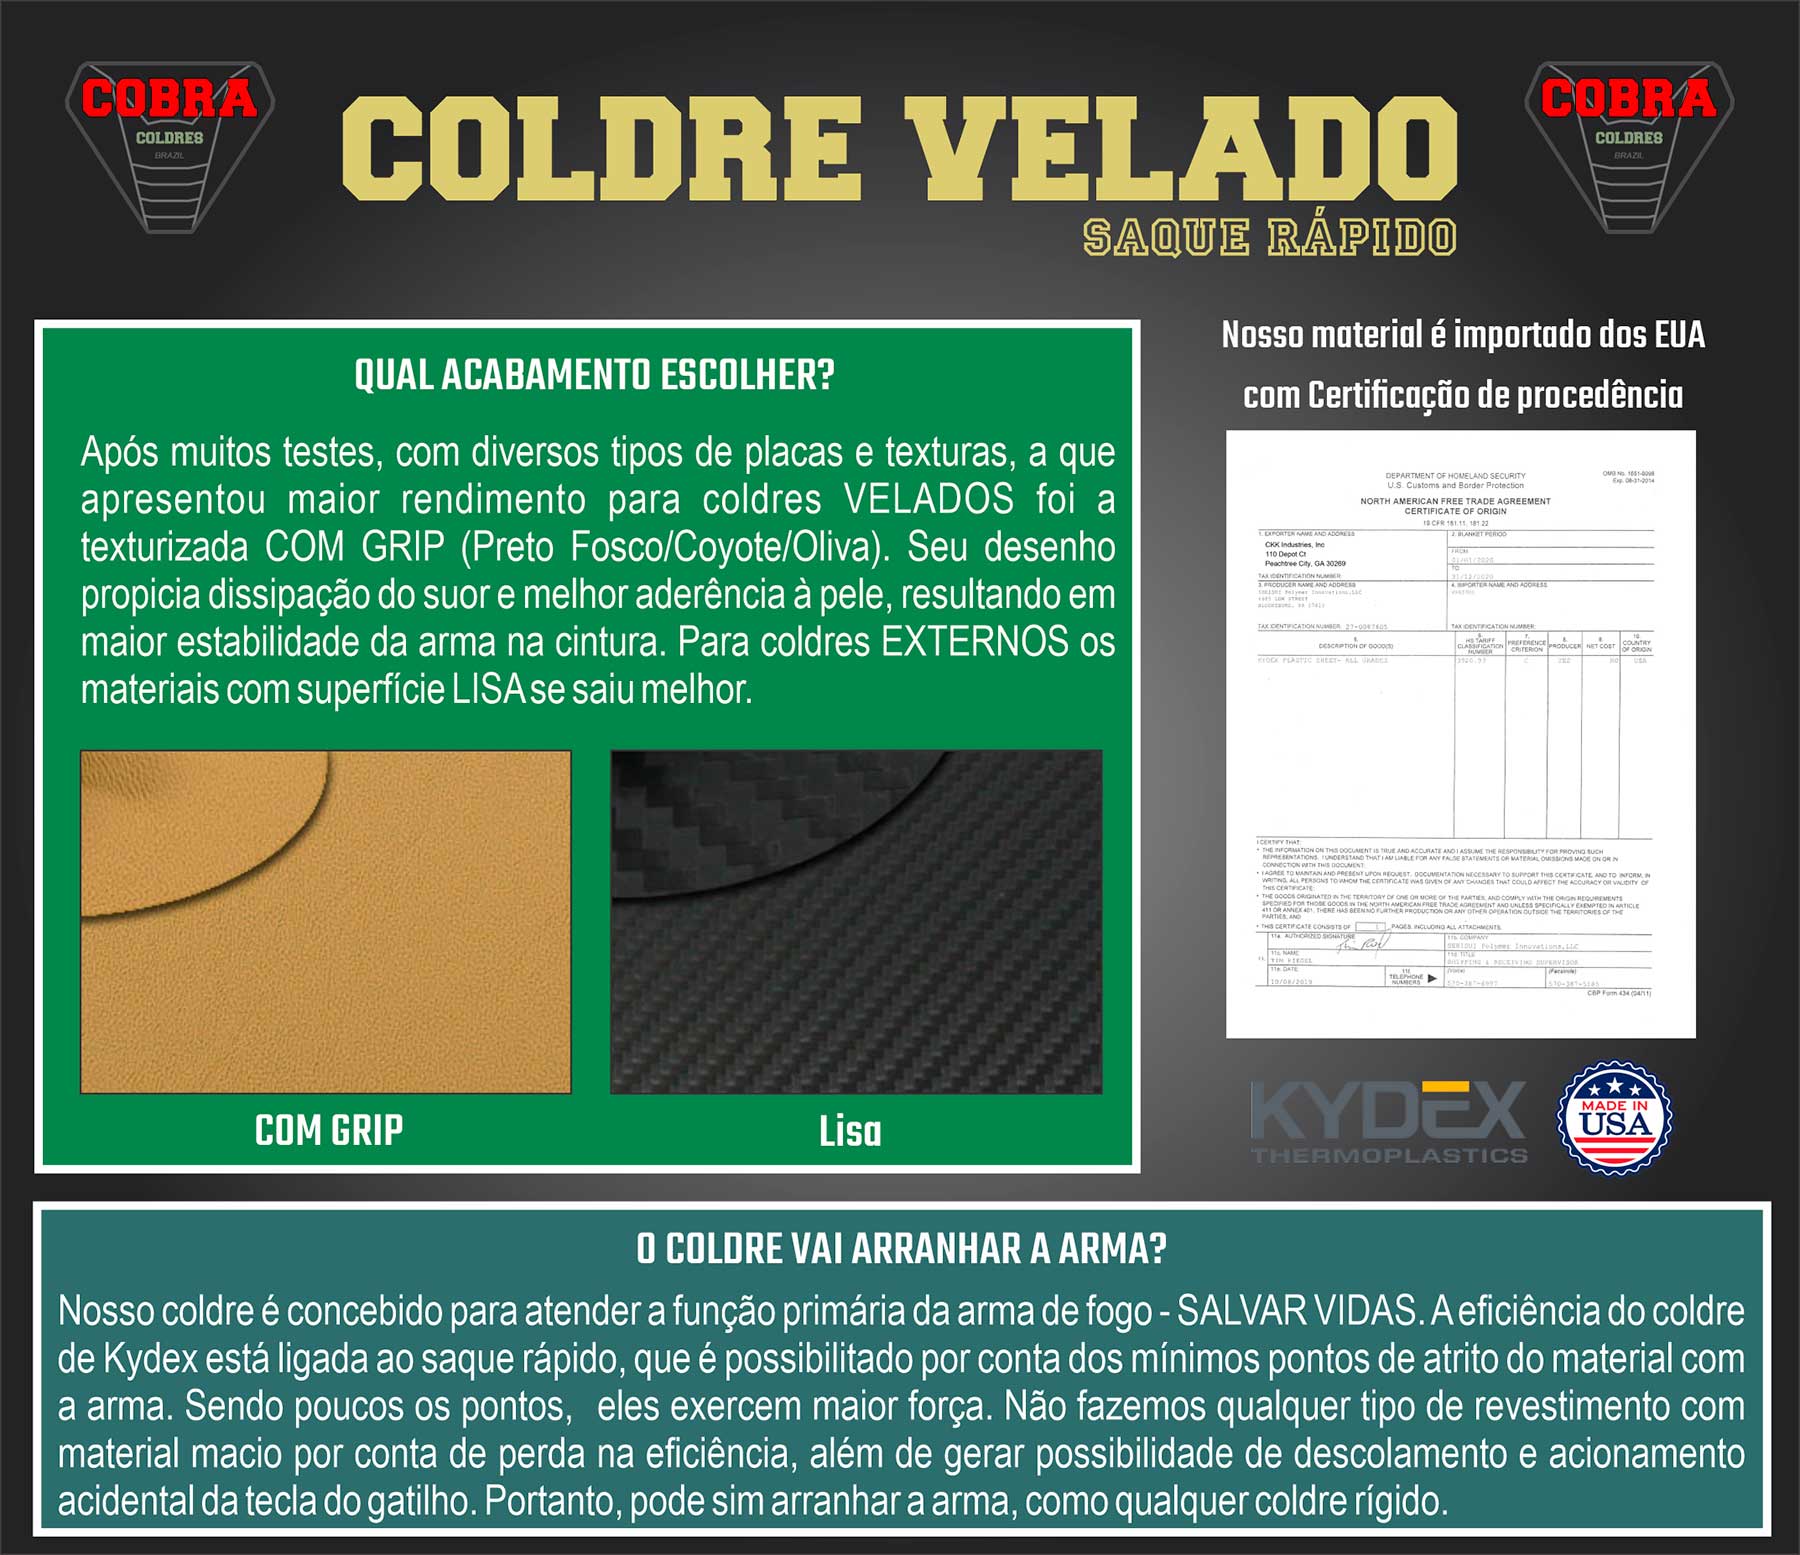 Coldre Cobra IWI [Jericho] [PL 941] - Jerichó Polímero 9mm - Cano 112mm - Saque Rápido Velado -  Kydex® 080 - Coyote